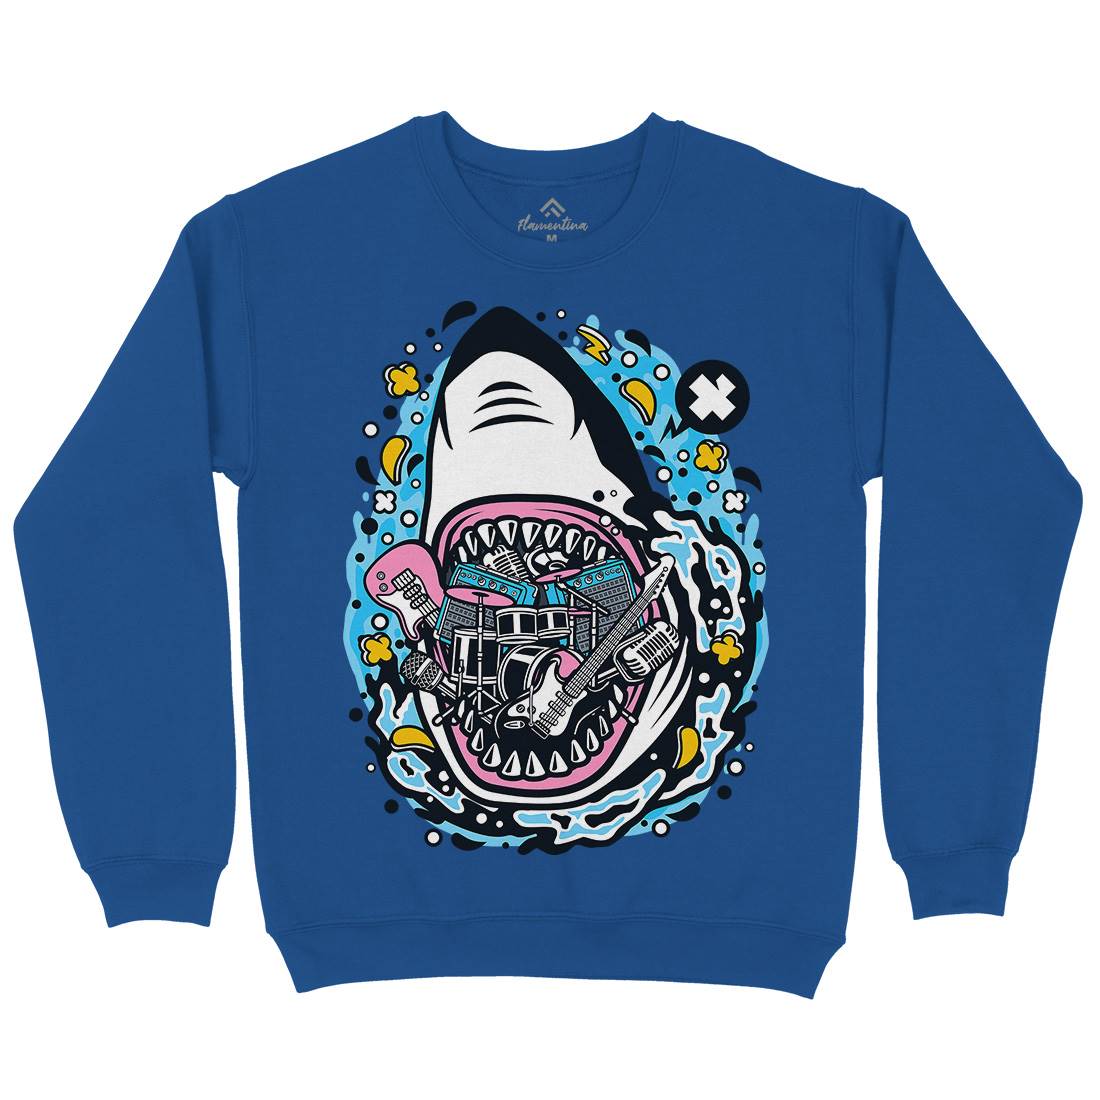 Shark Rock Kids Crew Neck Sweatshirt Music C646